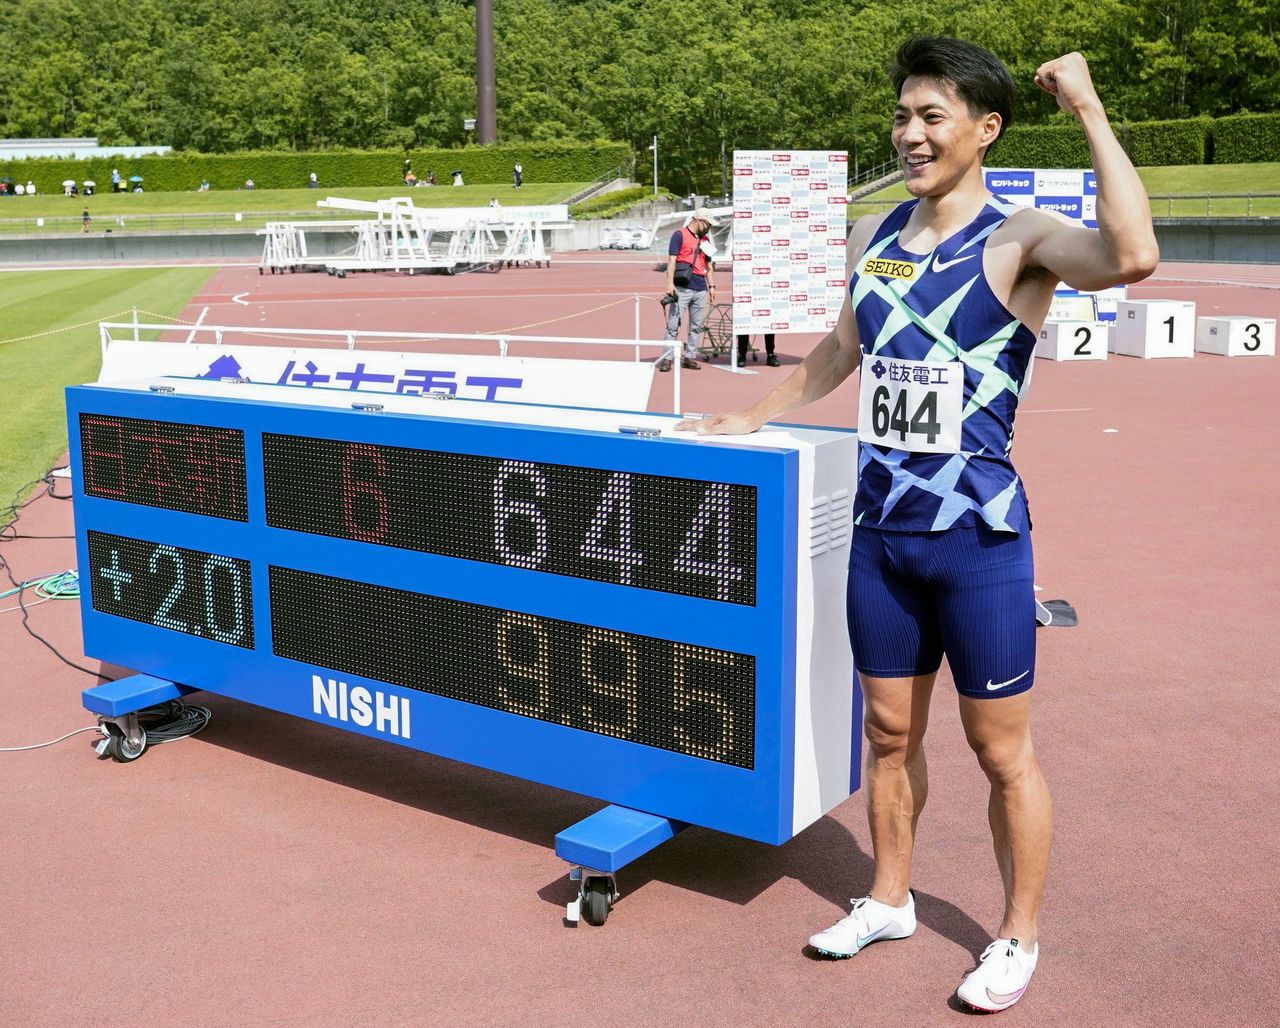 Yamagata Ryōta consiguió romper el récord japonés en el Fuse Sprint el 6 de junio y aseguró su plaza en las olimpiadas al quedar tercero en las clasificatorias del 25 de junio. Imagen tomada el 6 de junio de 2021 en el estadio de atletismo Yamada Sports Park de Tottori. (Jiji Press)